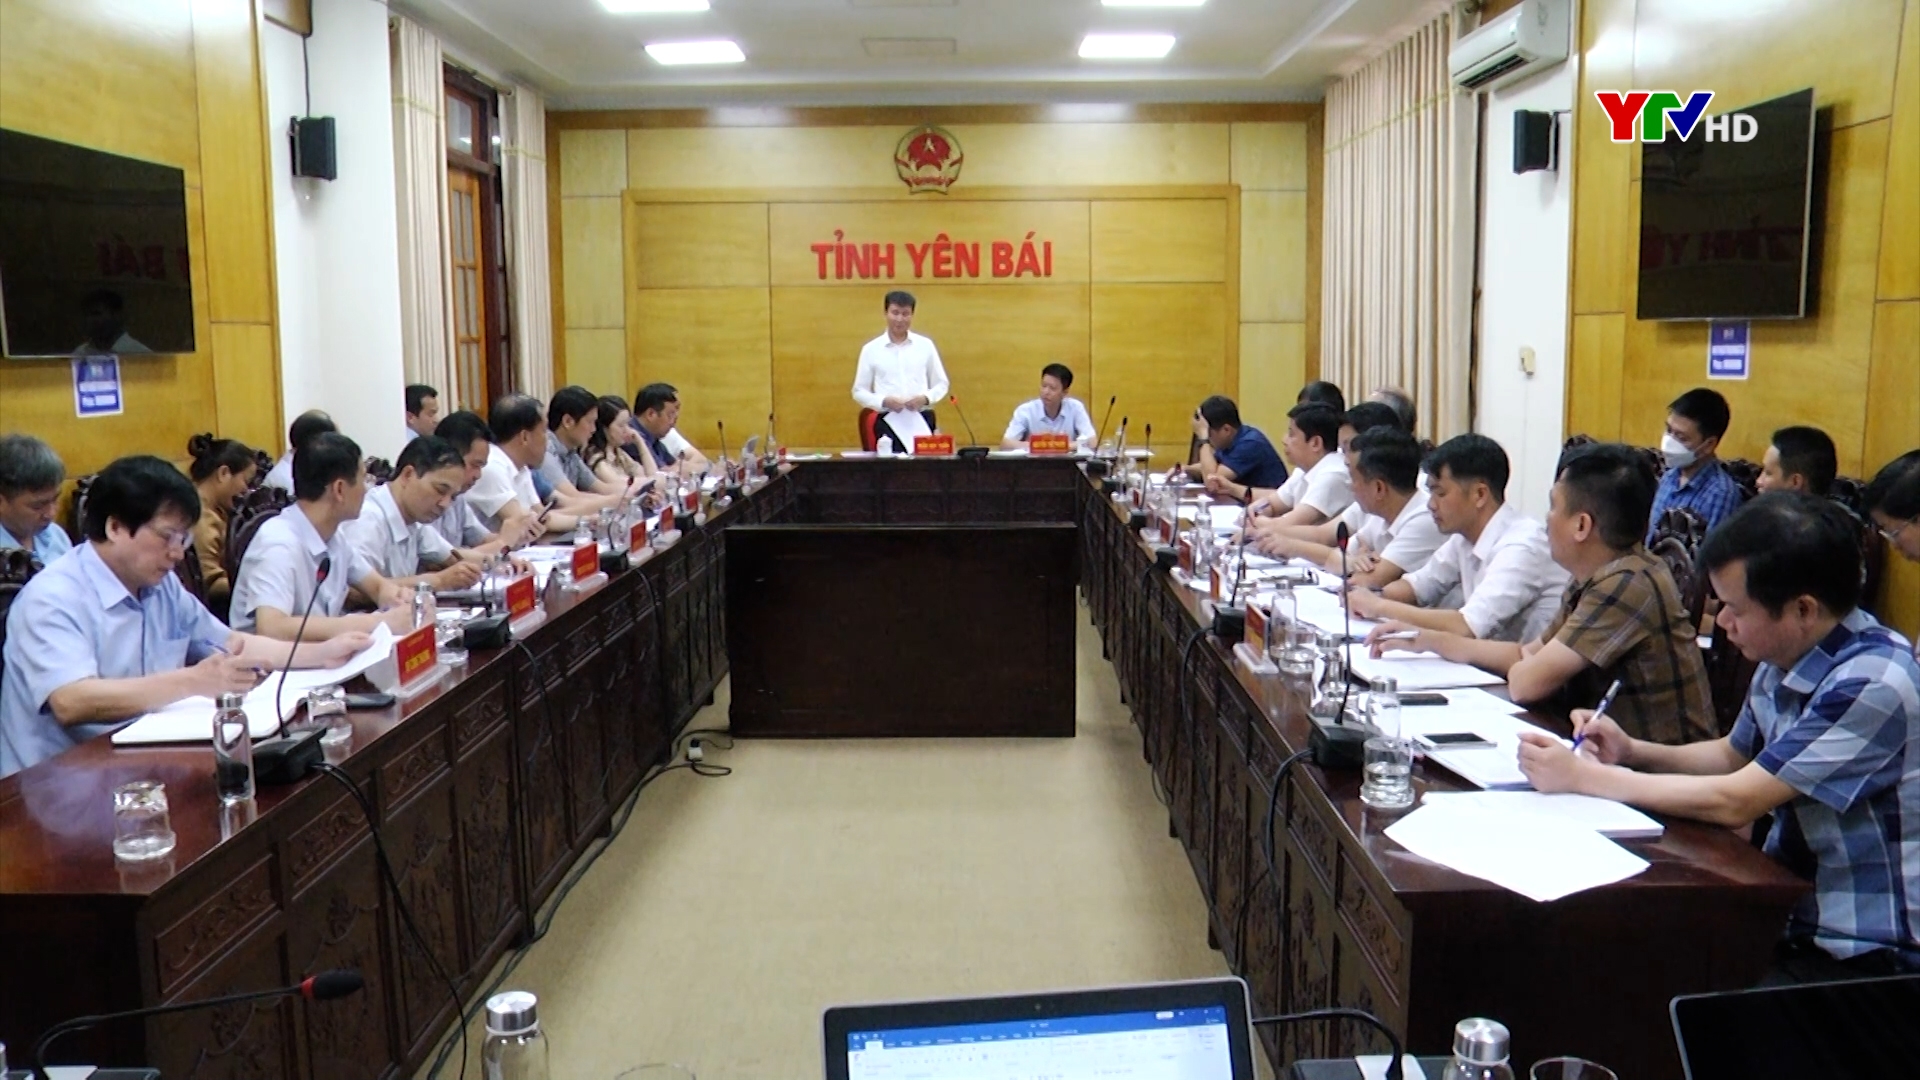 Đồng chí Chủ tịch UBND tỉnh làm việc với các sở, ngành, địa phương về chương trình phát triển đô thị tỉnh Yên Bái đến năm 2030